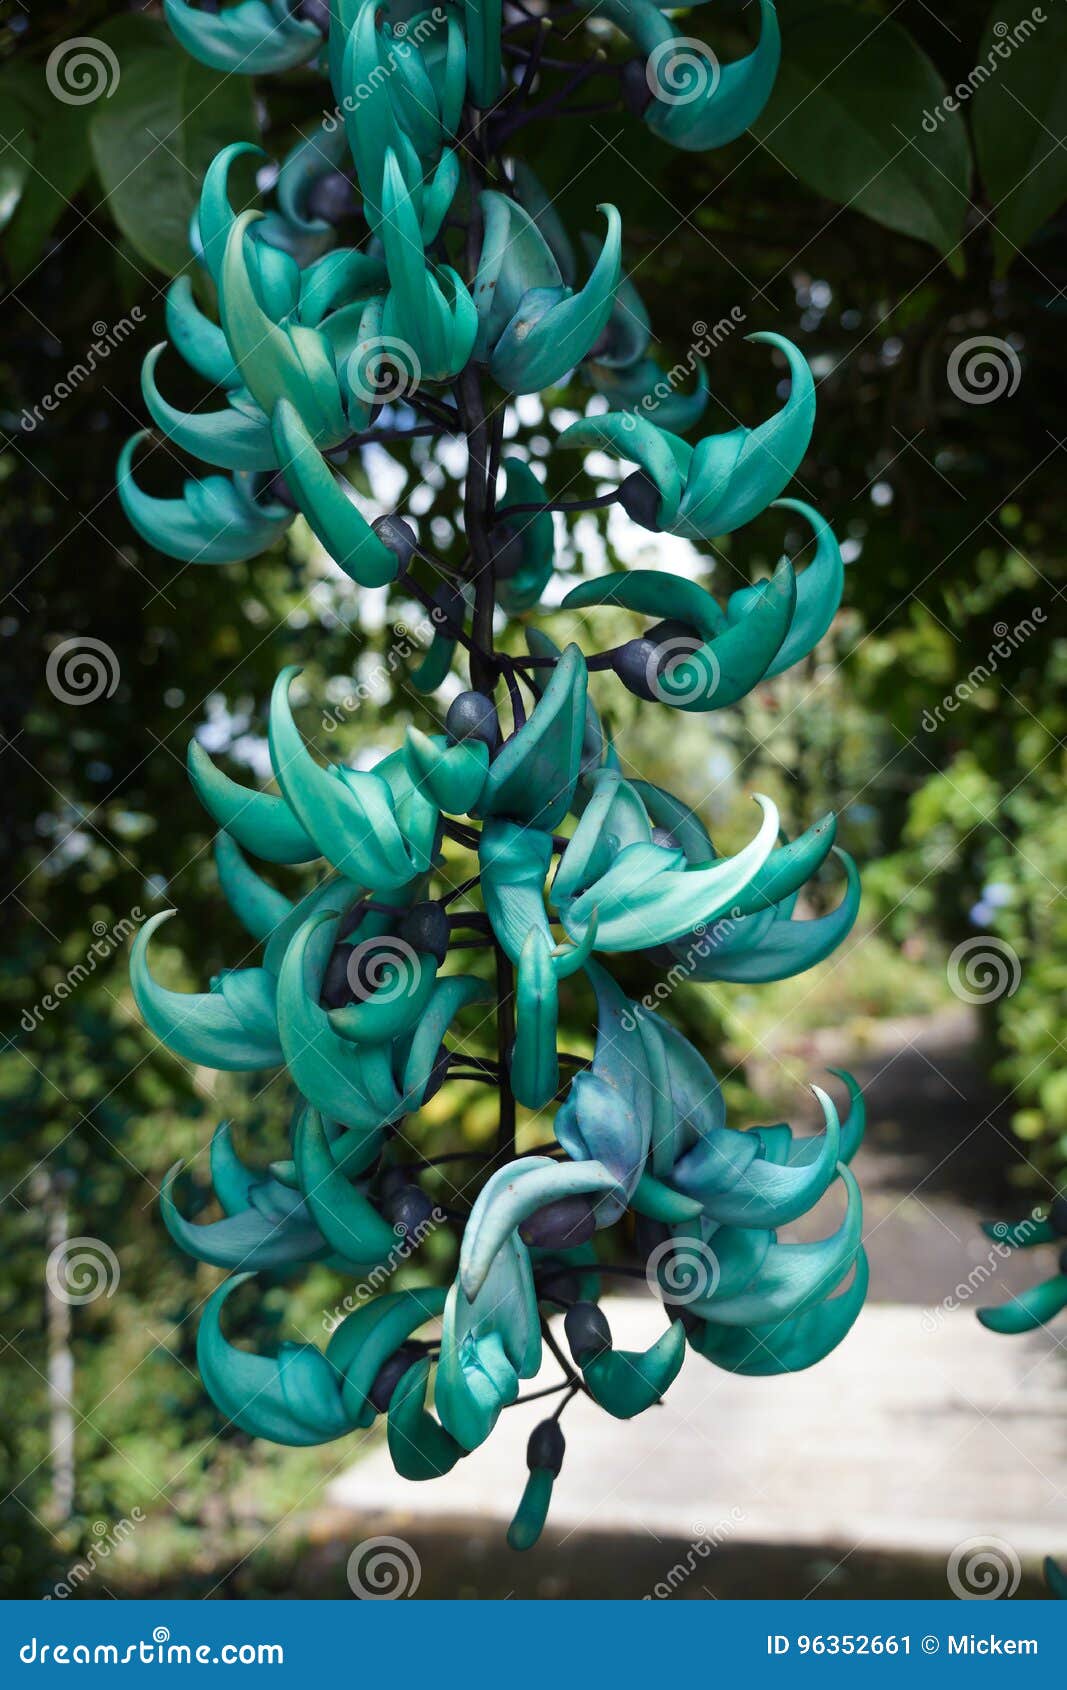 blue jade vine